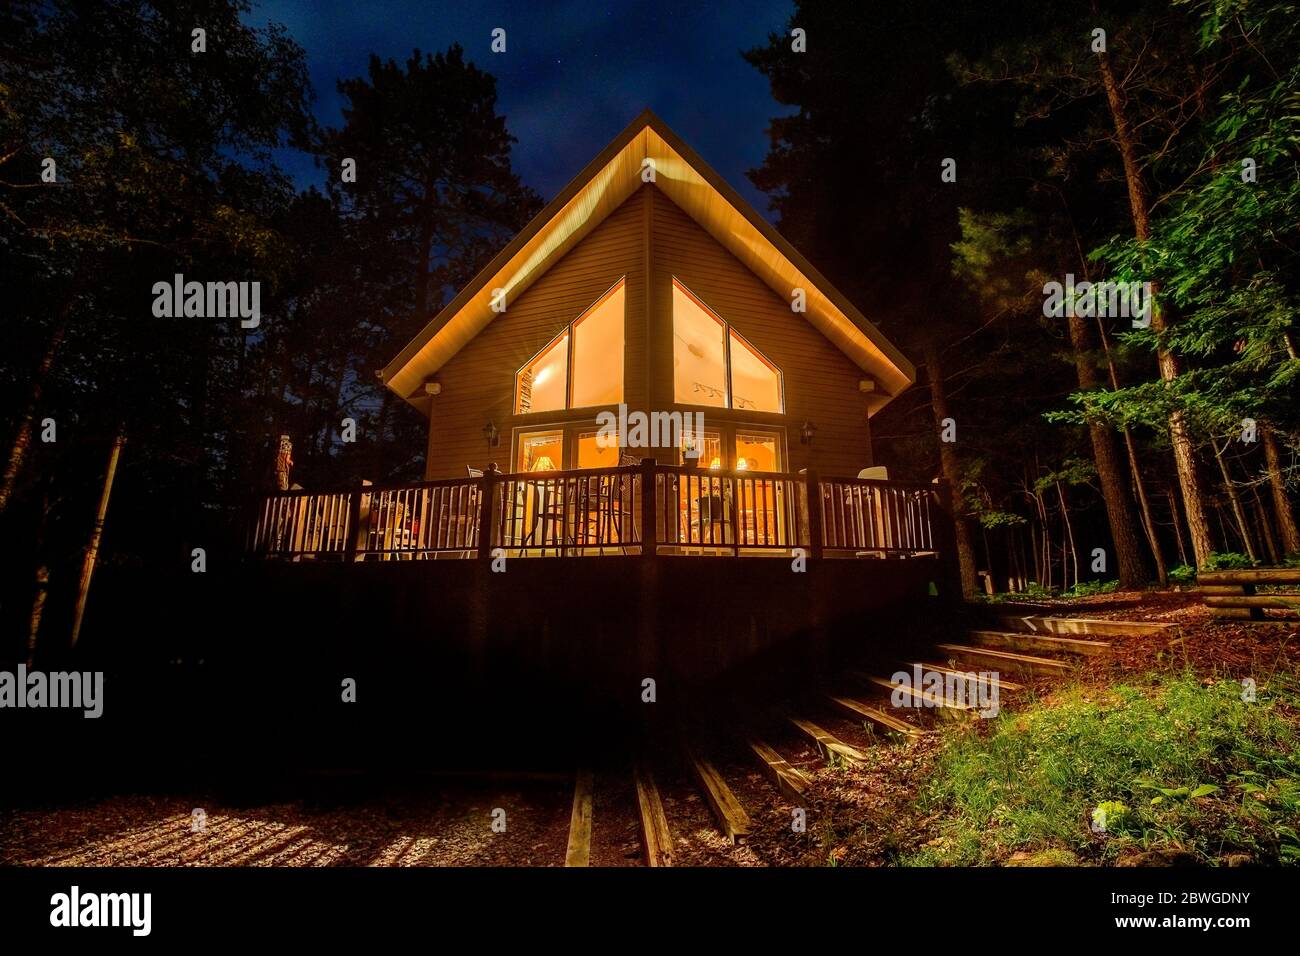 Casa vacanza con finestre illuminate nel bosco. Idilliaca cabina o cottage fotografato di notte. I concetti potrebbero includere viaggio, natura, arco, ecc. Foto Stock